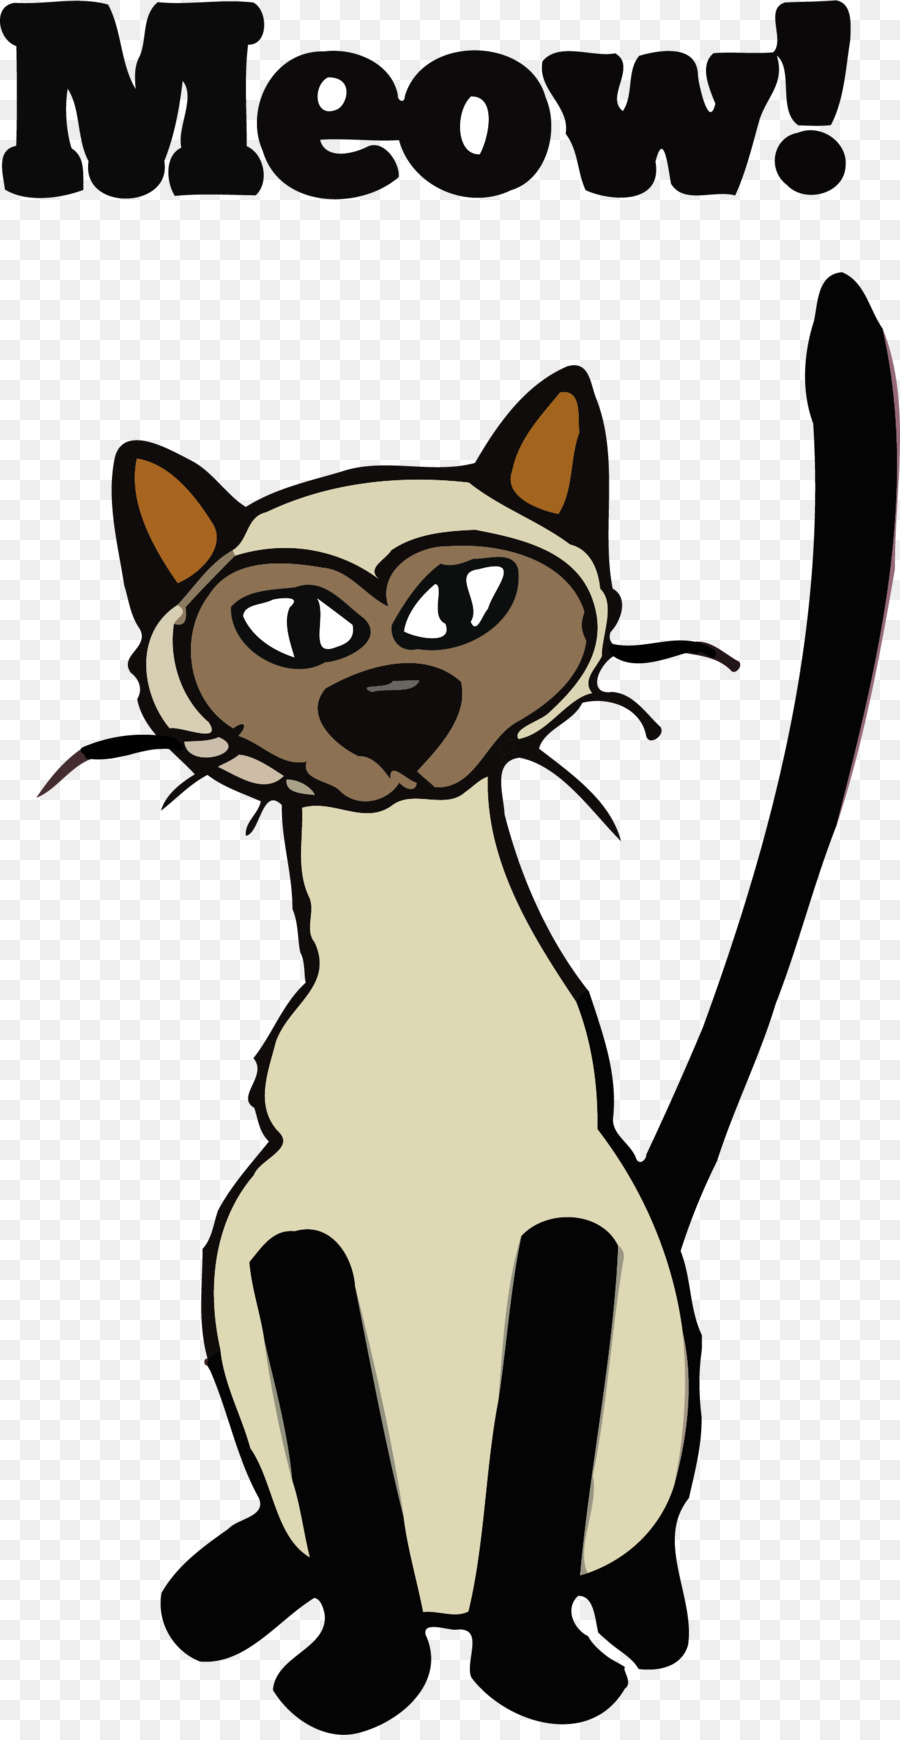 Die schnurrhaare der Katze Meow Tiger Clip-art - Katze